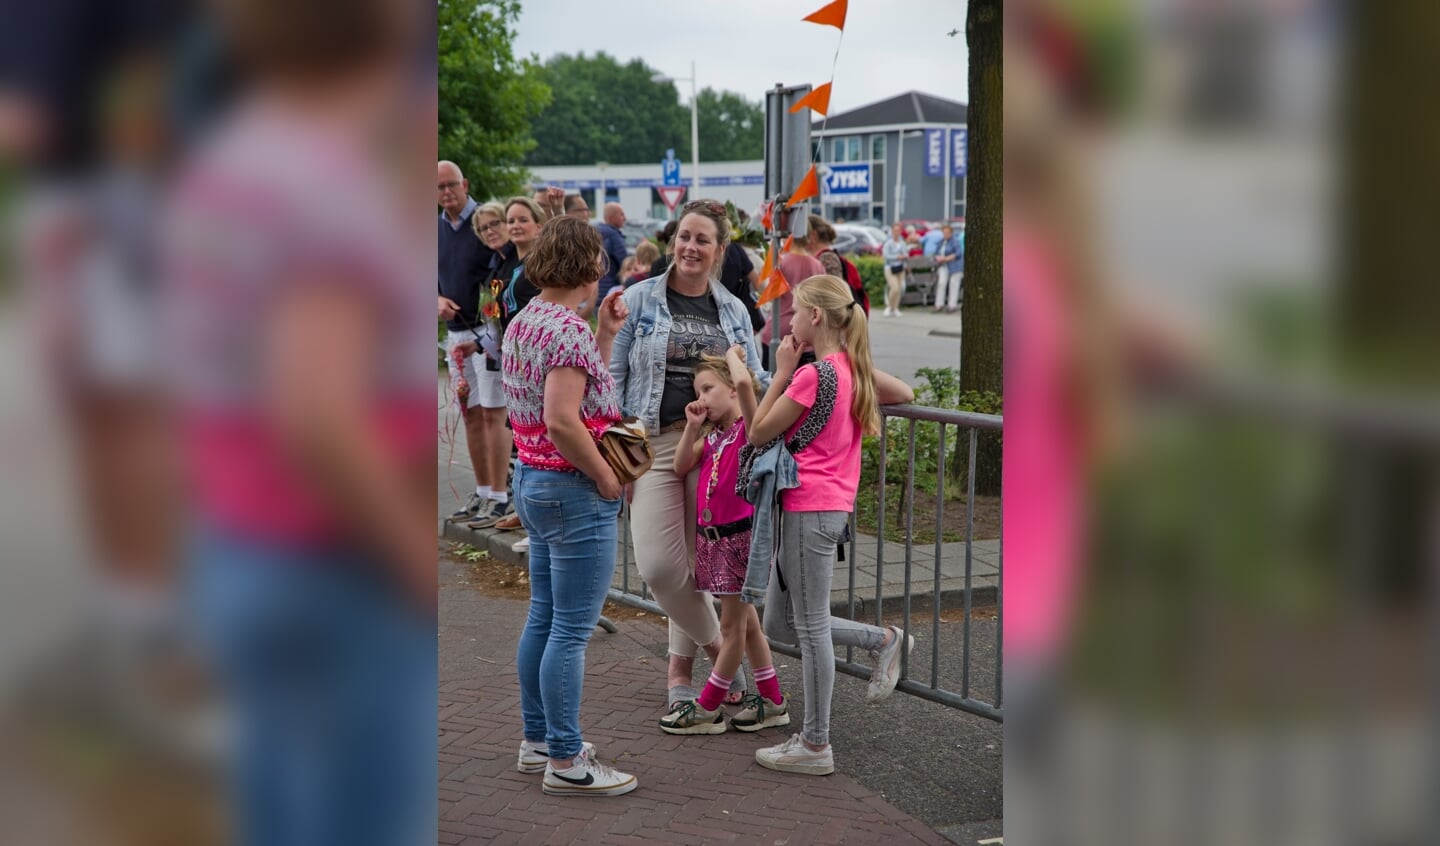 Avondvierdaagse in Wierden populairder dan ooit: vrijdag ruim 1.300 deelnemers